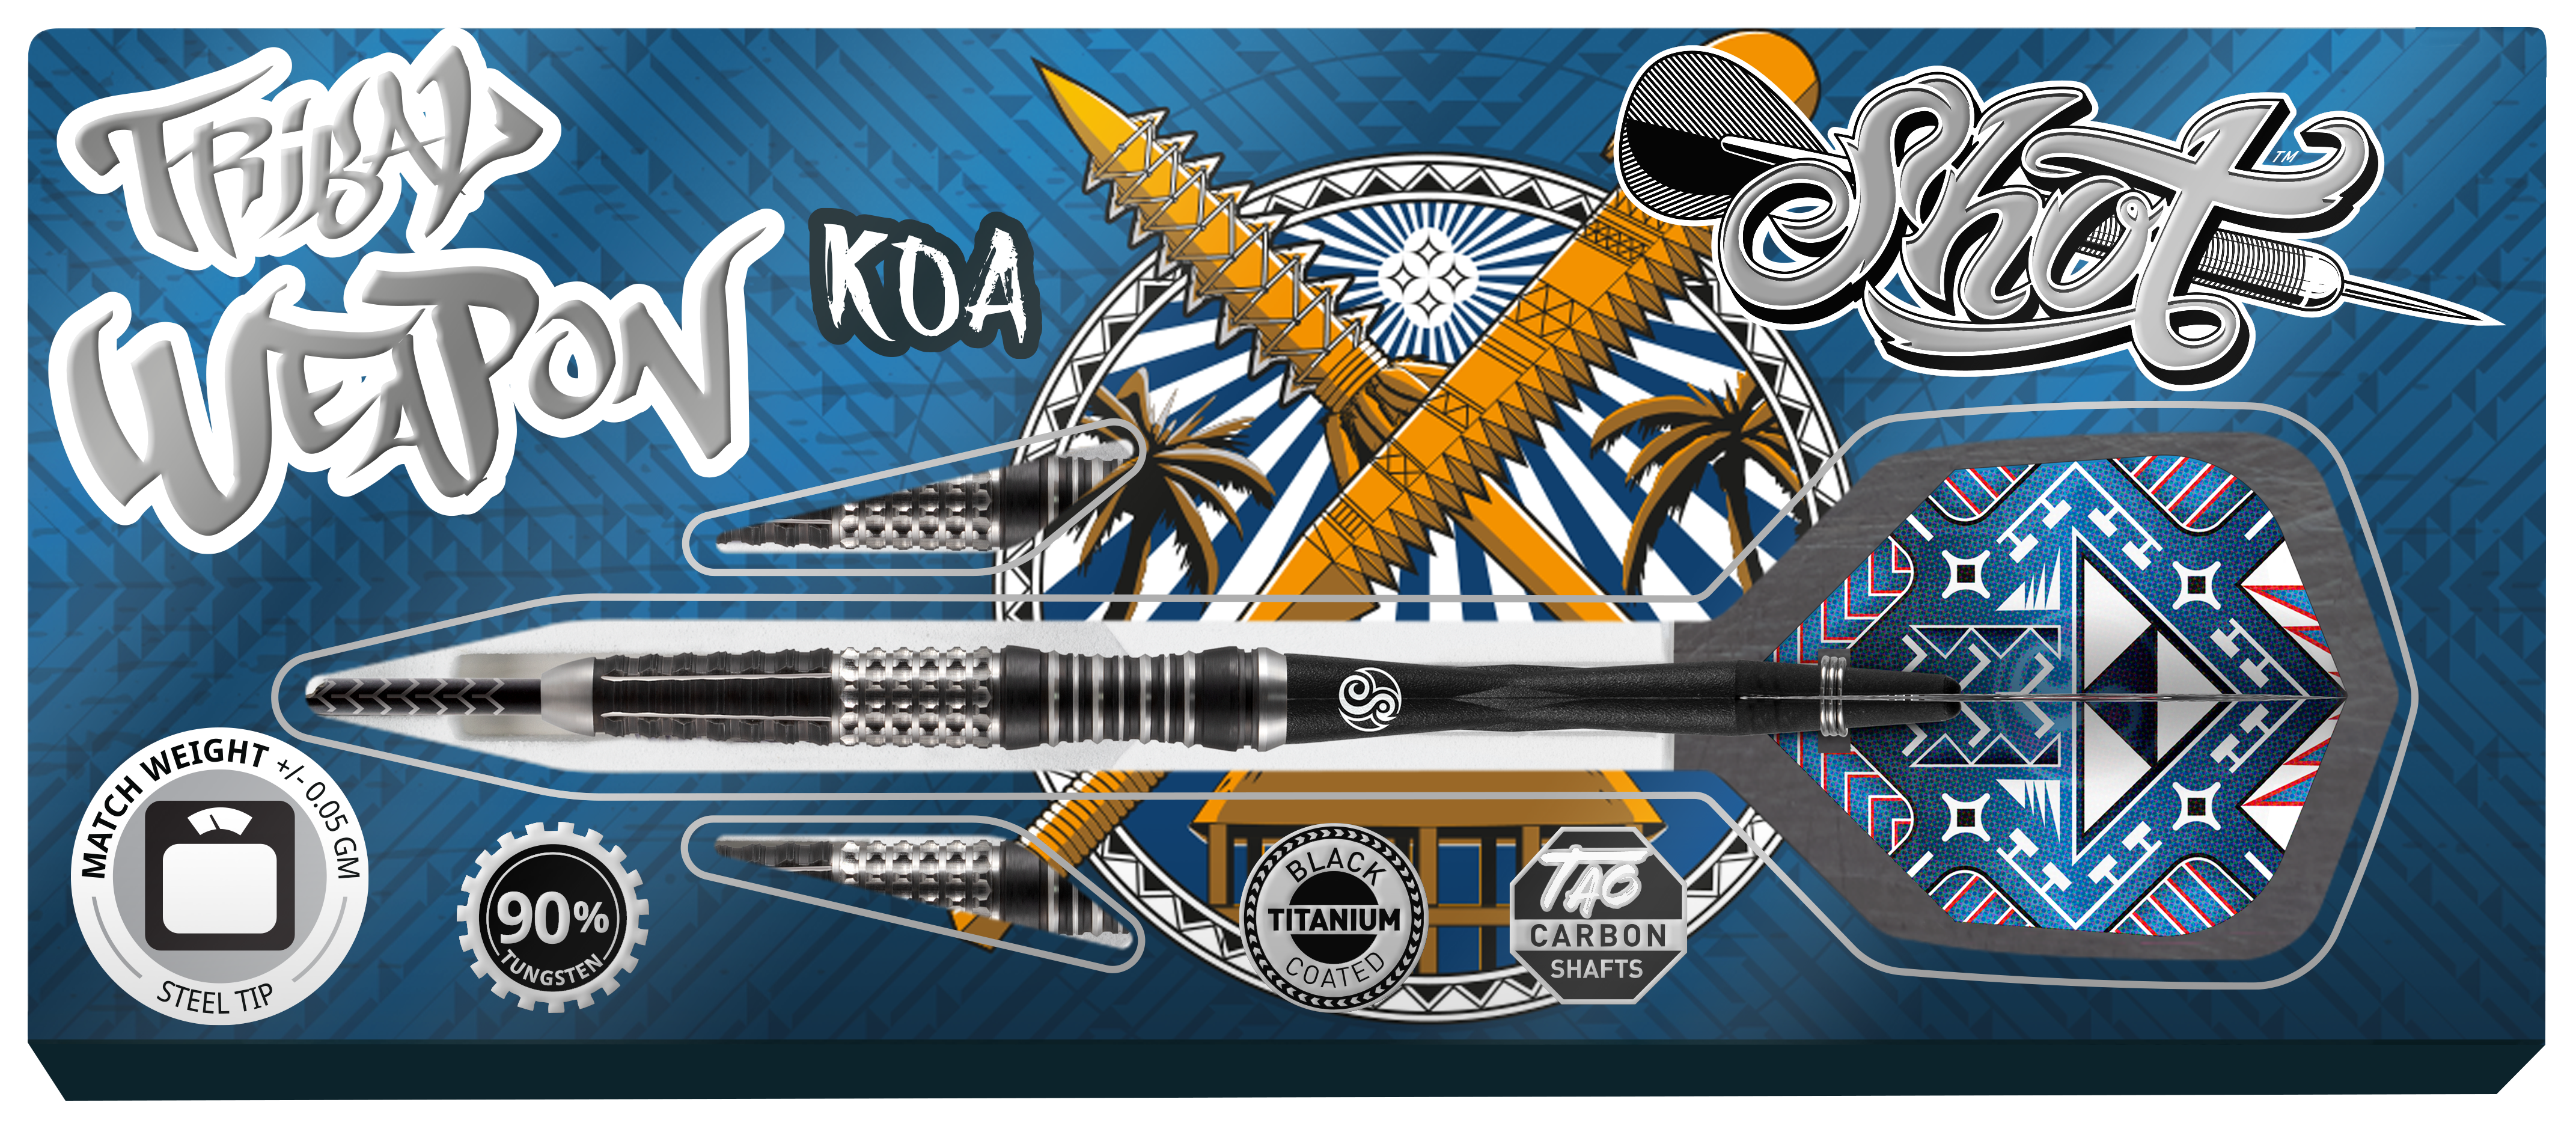 Shot Tribal Weapon Koa 90% 23g Steeltip